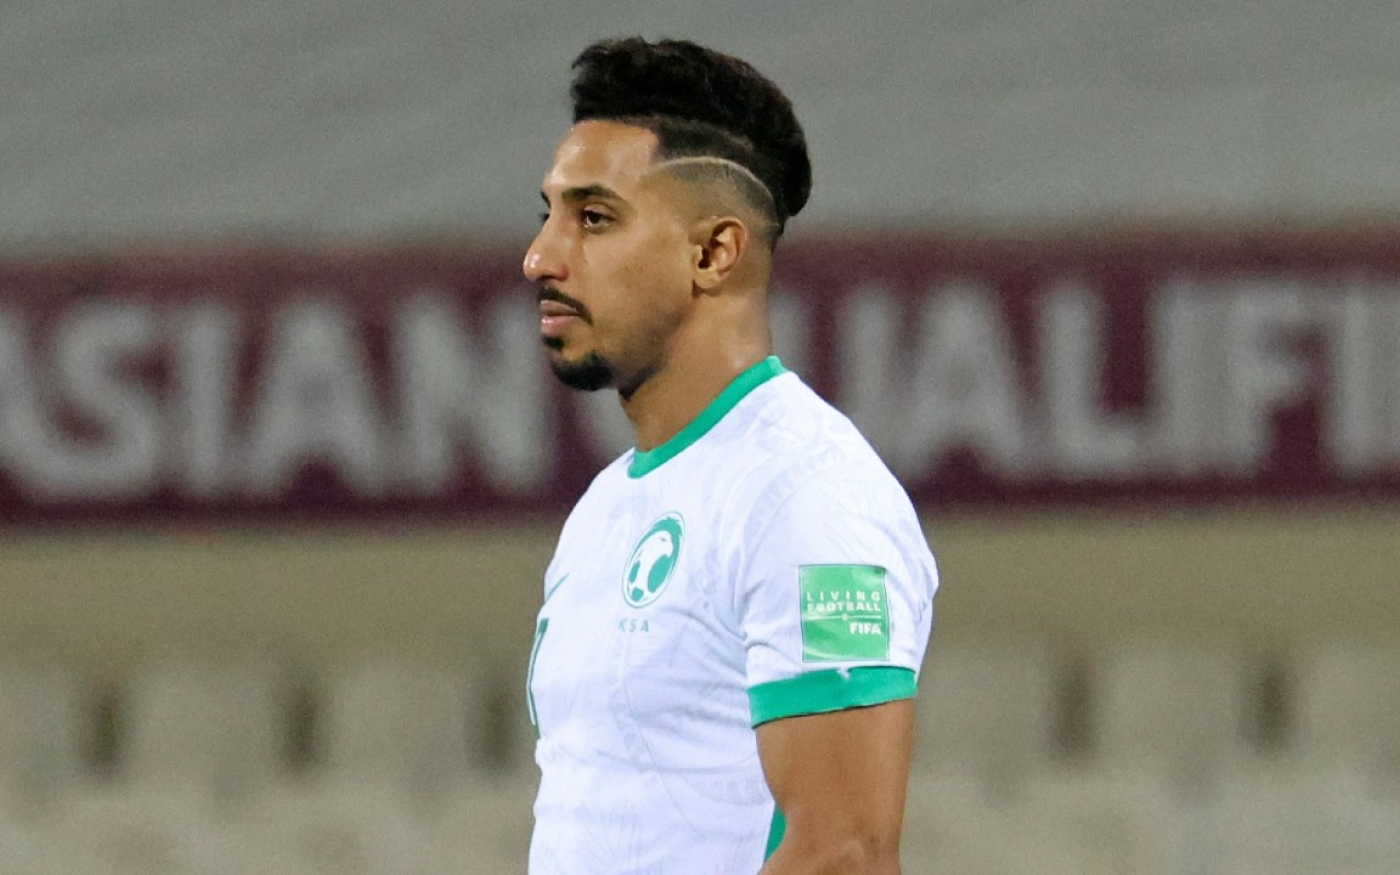 Le milieu de terrain saoudien Salem al-Dawsari participe à un match d’éliminatoires de la zone Asie pour la Coupe du monde 2022 contre la Chine, au stade de Sharjah (Émirats arabes unis), le 24 mars 2022 (AFP)